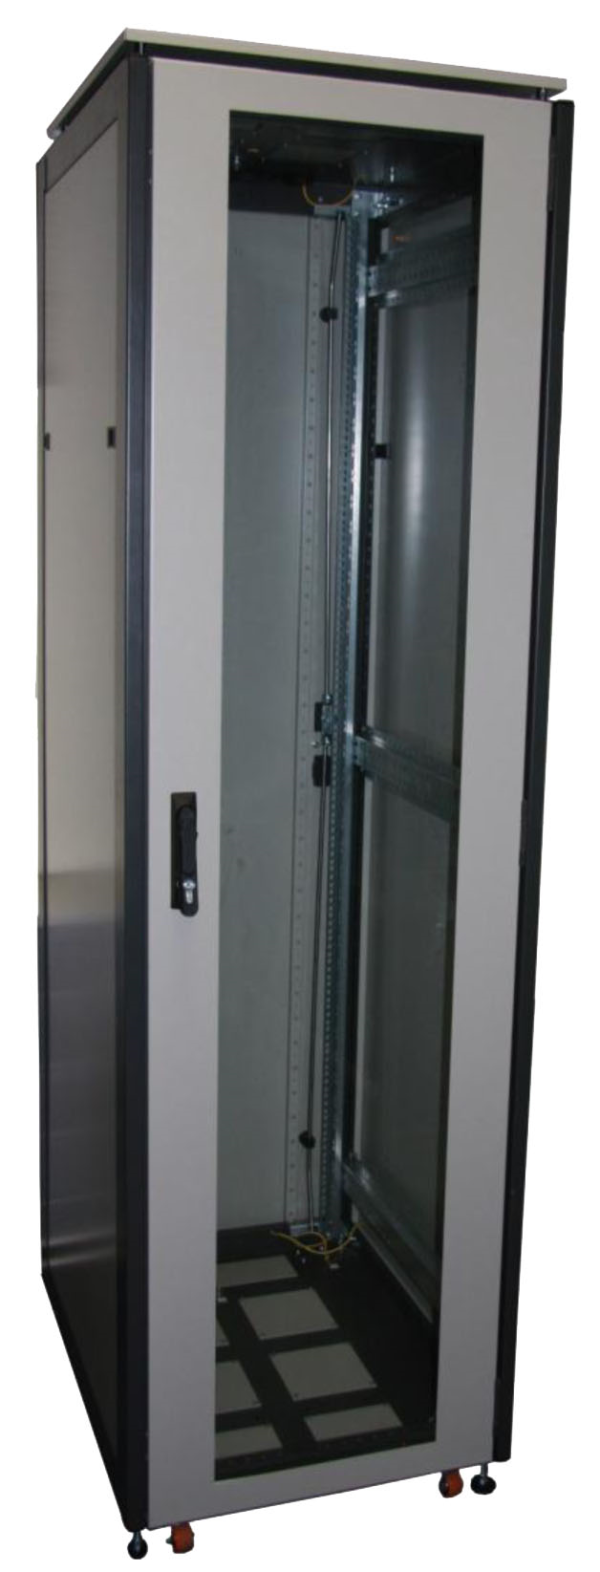 ССКТБ ТОМАСС ШТК-8822Э-00 - шкаф телекоммуникационный 19", 47U, 800х800х2200 мм, с металлической и стеклянной дверью